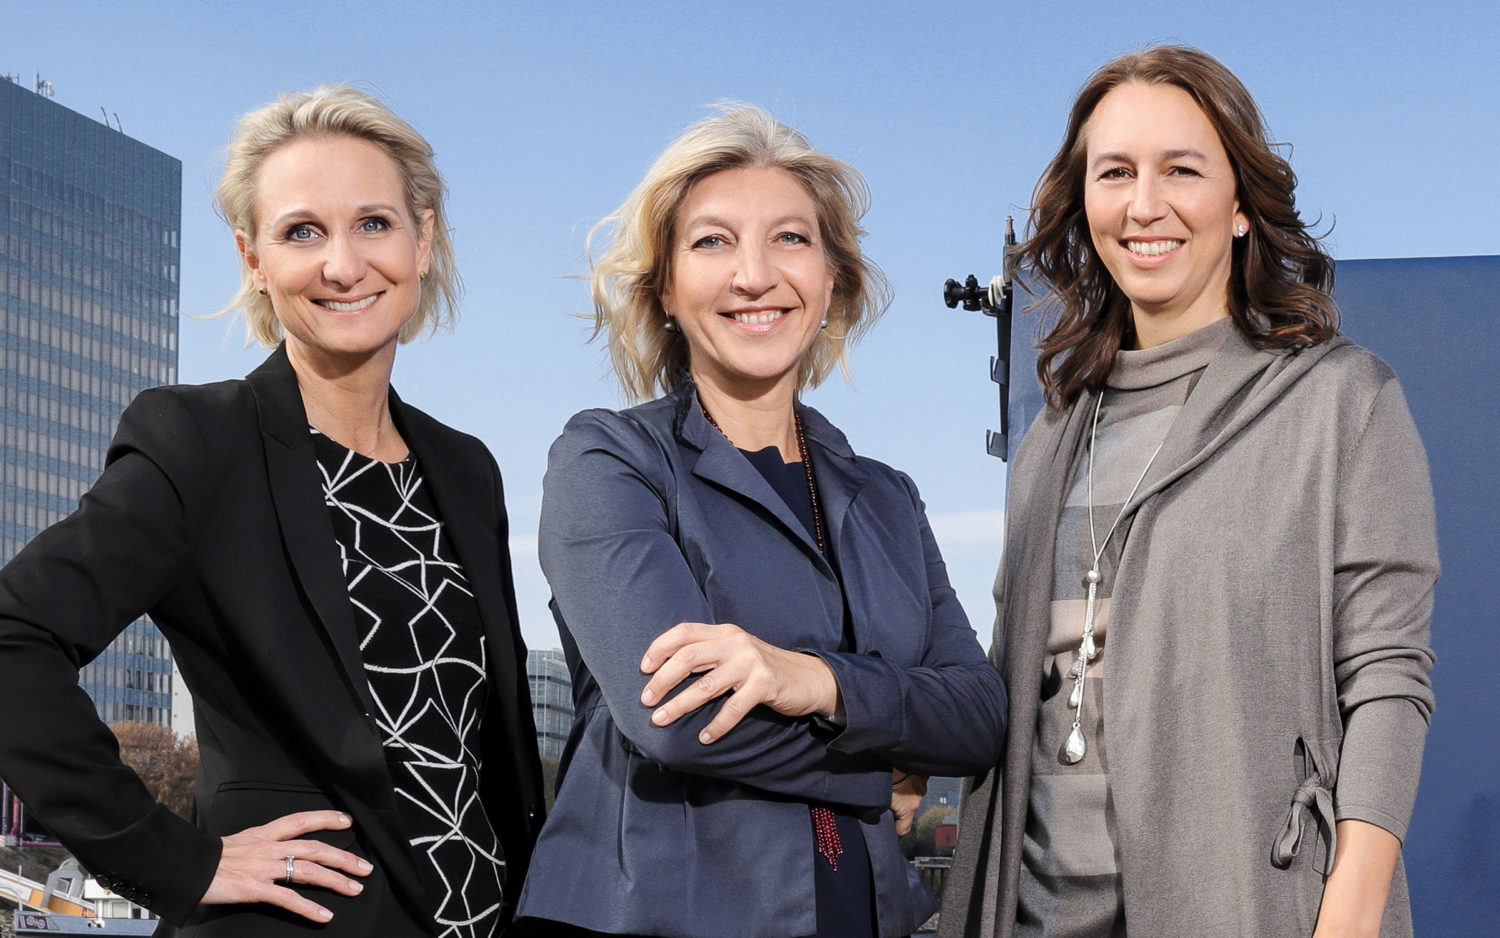 The LOOQ team. From left: Elena Bichelmeier, Caroline Trost and Katja Tricks.